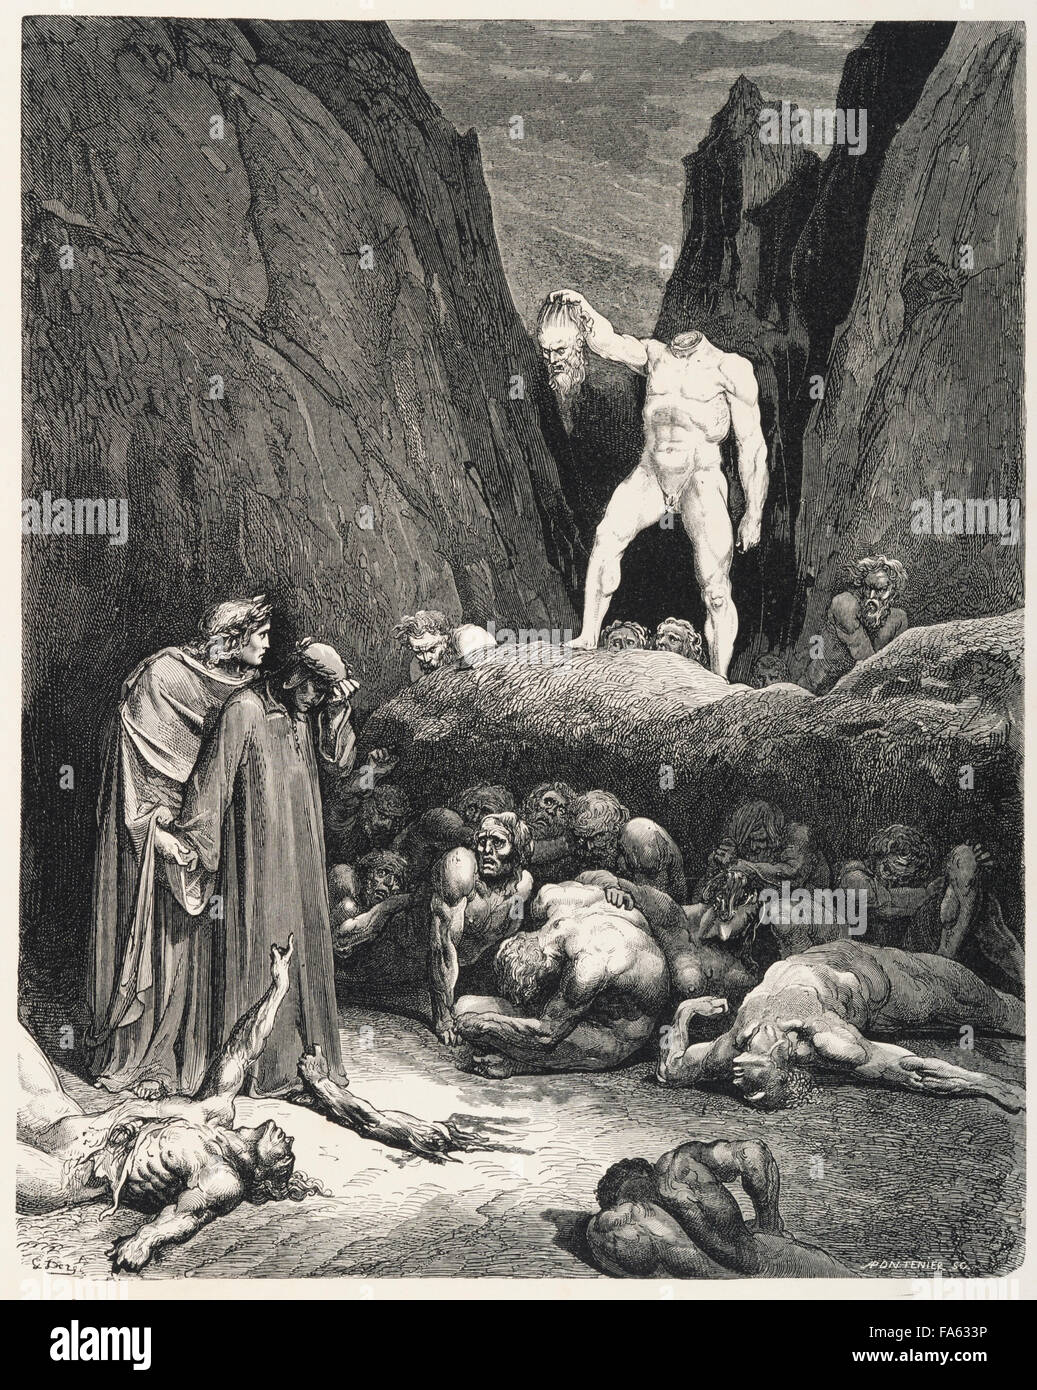 9 Círculos De Pintura Dantes Inferno Ilustração Stock - Ilustração de  inferno, conceito: 275755371